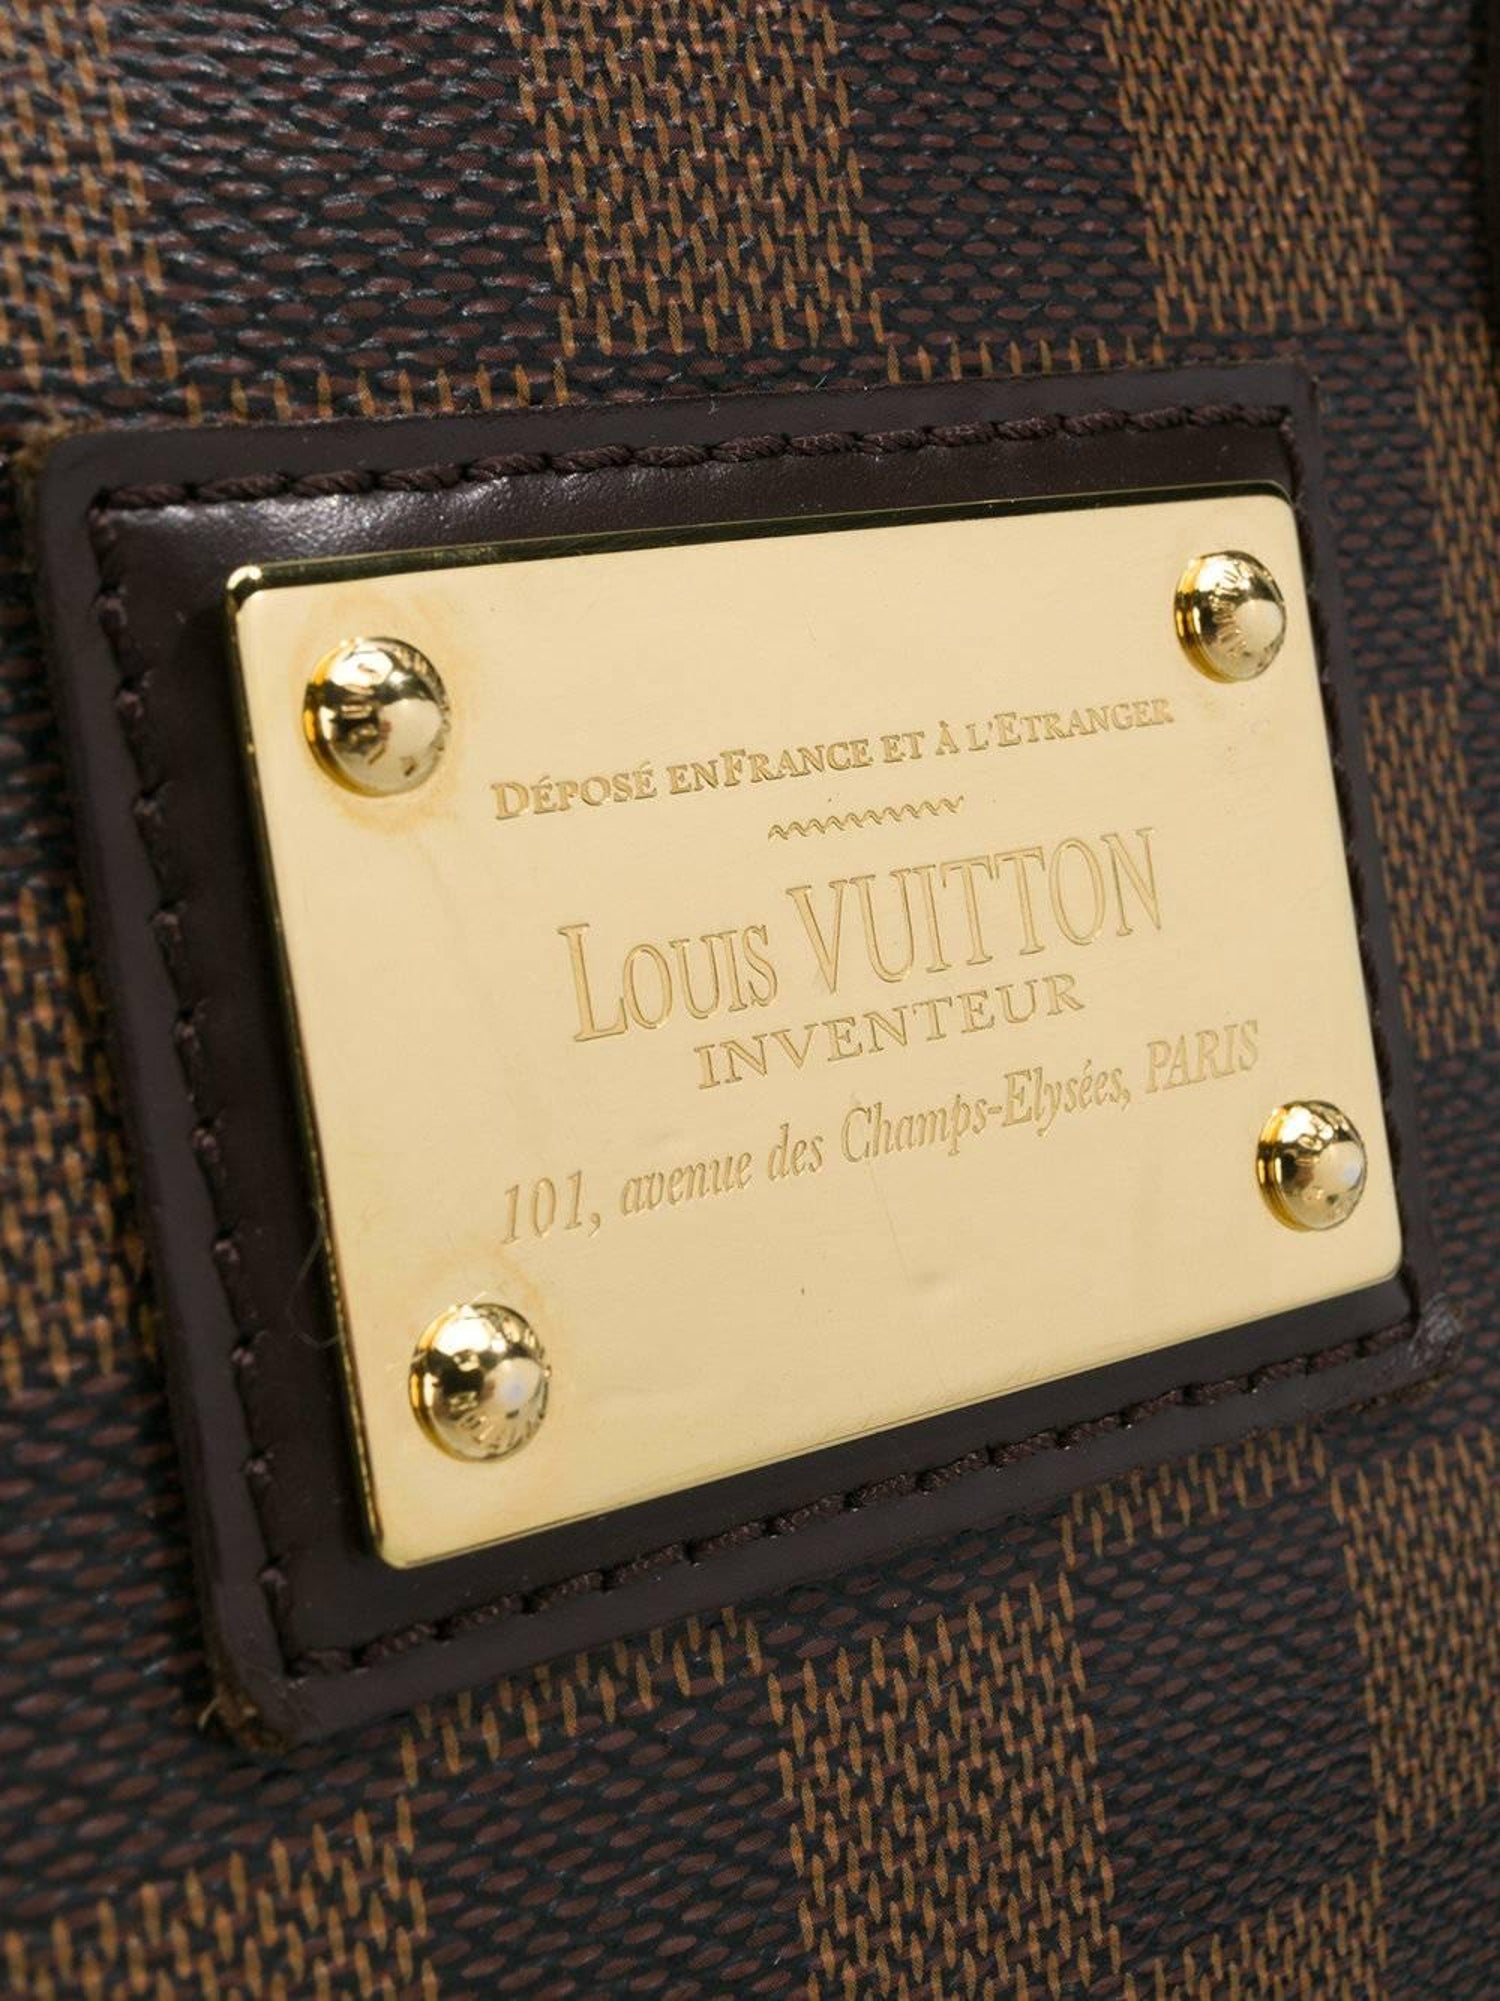 Louis Vuitton Brown Canvas Damier Ebene Shoulder Bag at 1stDibs | louis  vuitton inventeur bag 101 avenue des champs elysees paris, louis vuitton  inventeur 101 avenue des champs elysees paris, louis vuitton